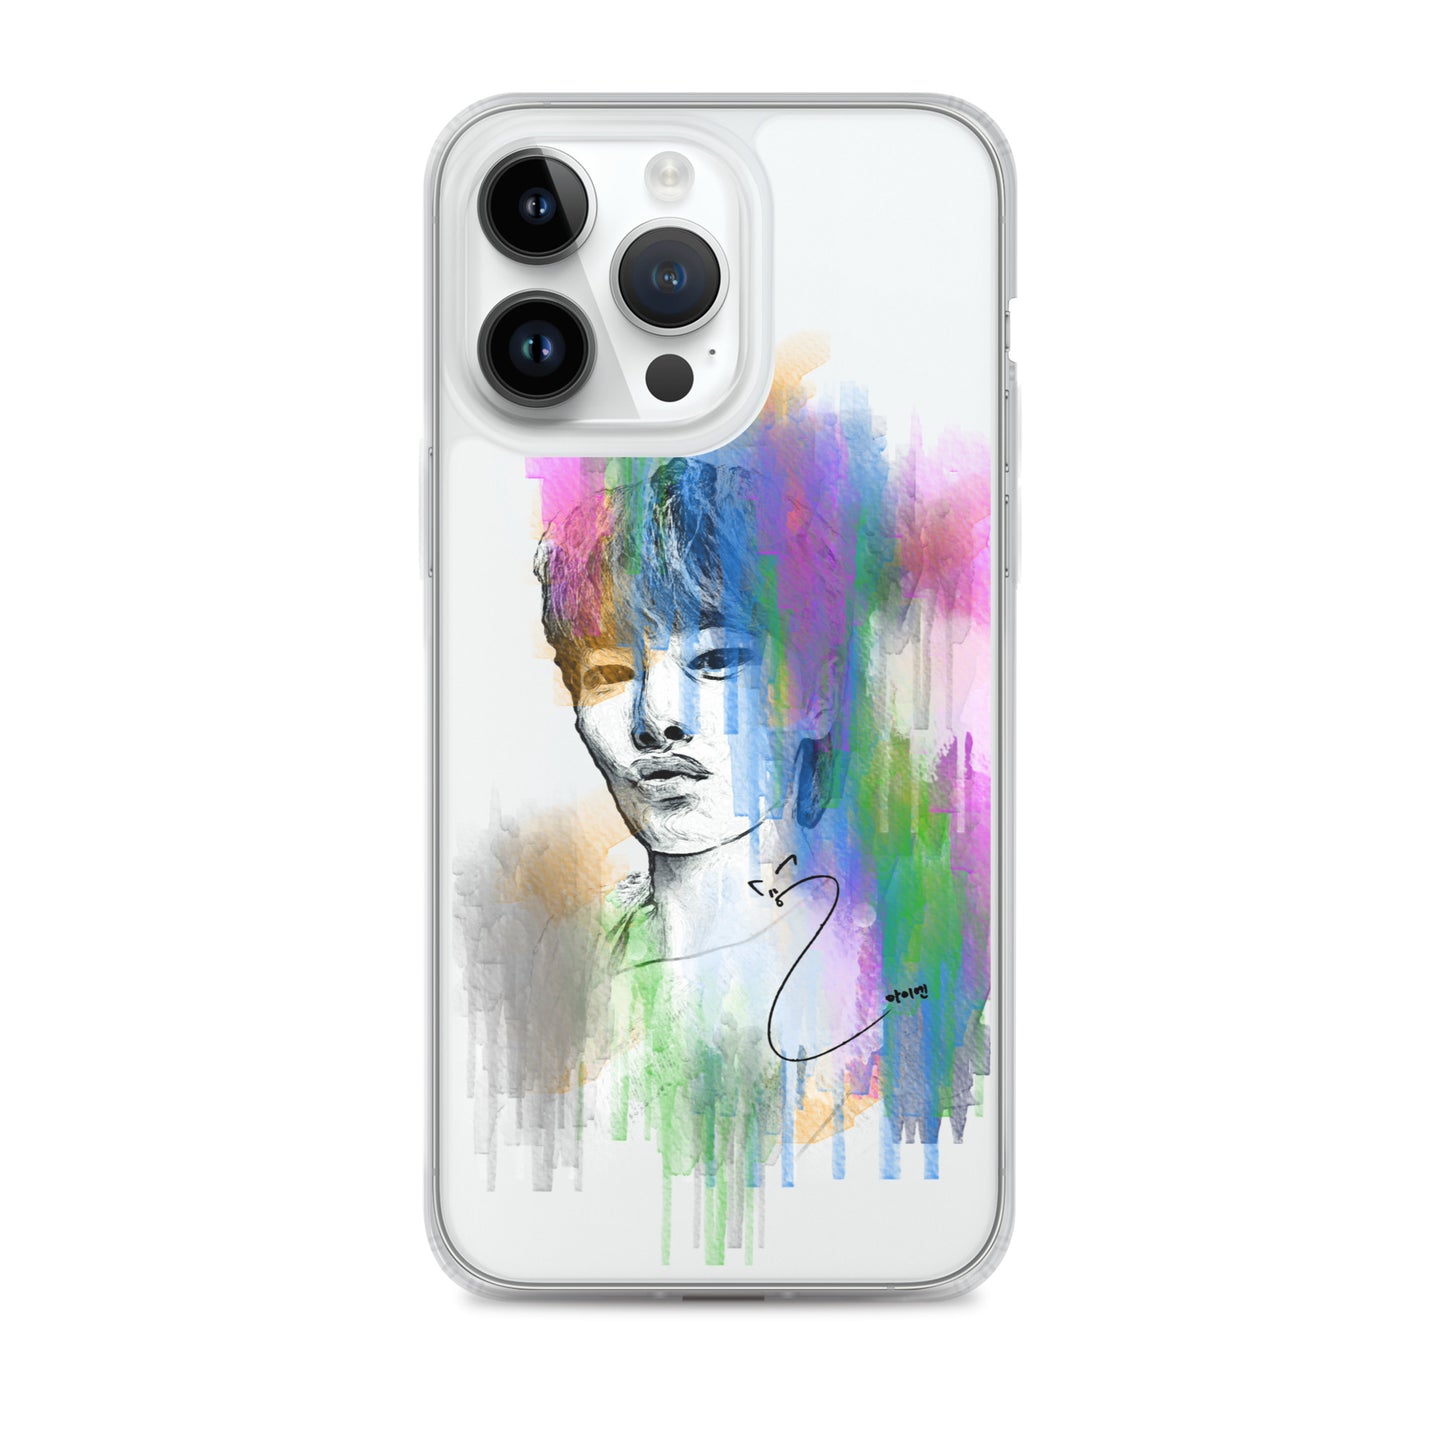 Stray Kids I.N, Yang Jeong-in Waterpaint Portrait iPhone Case